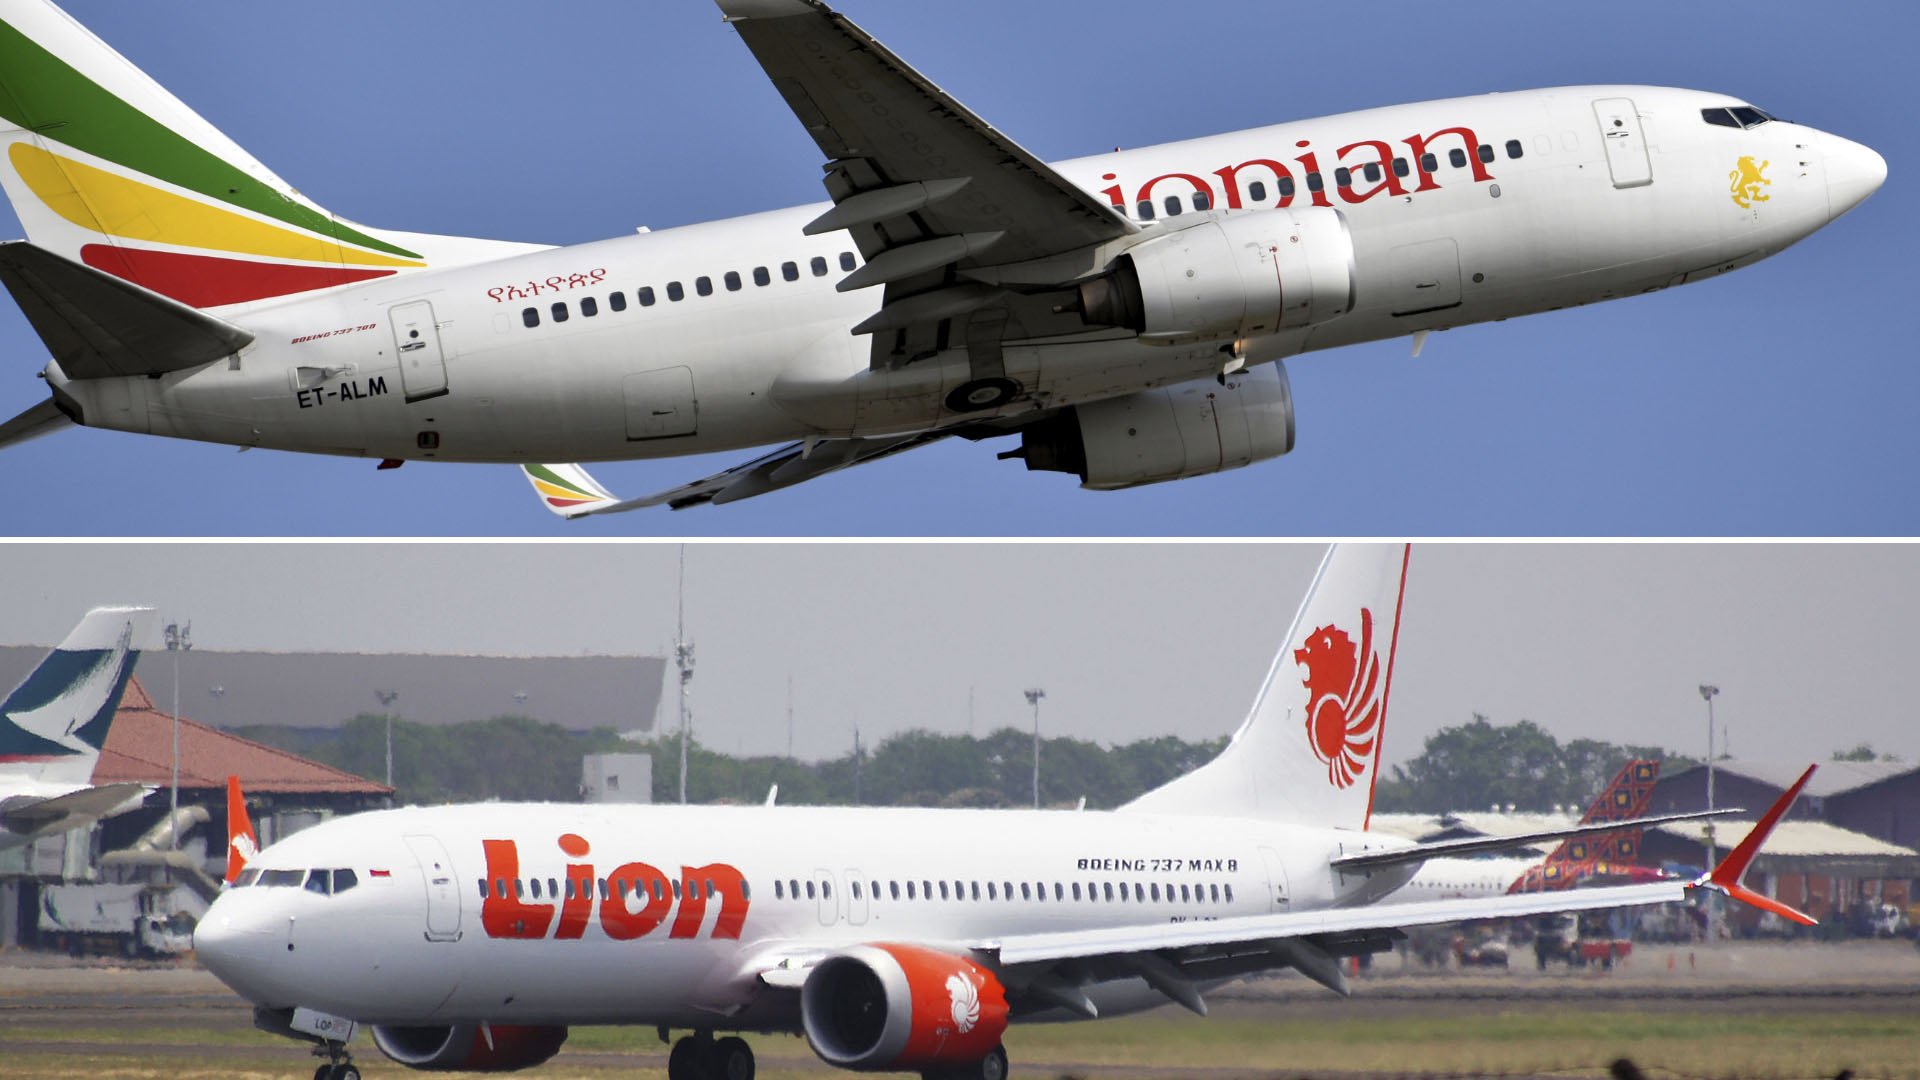 Las autoridades etíopes encontraron semejanzas entre los accidentes de Ethiopian Airlines y Lion Air